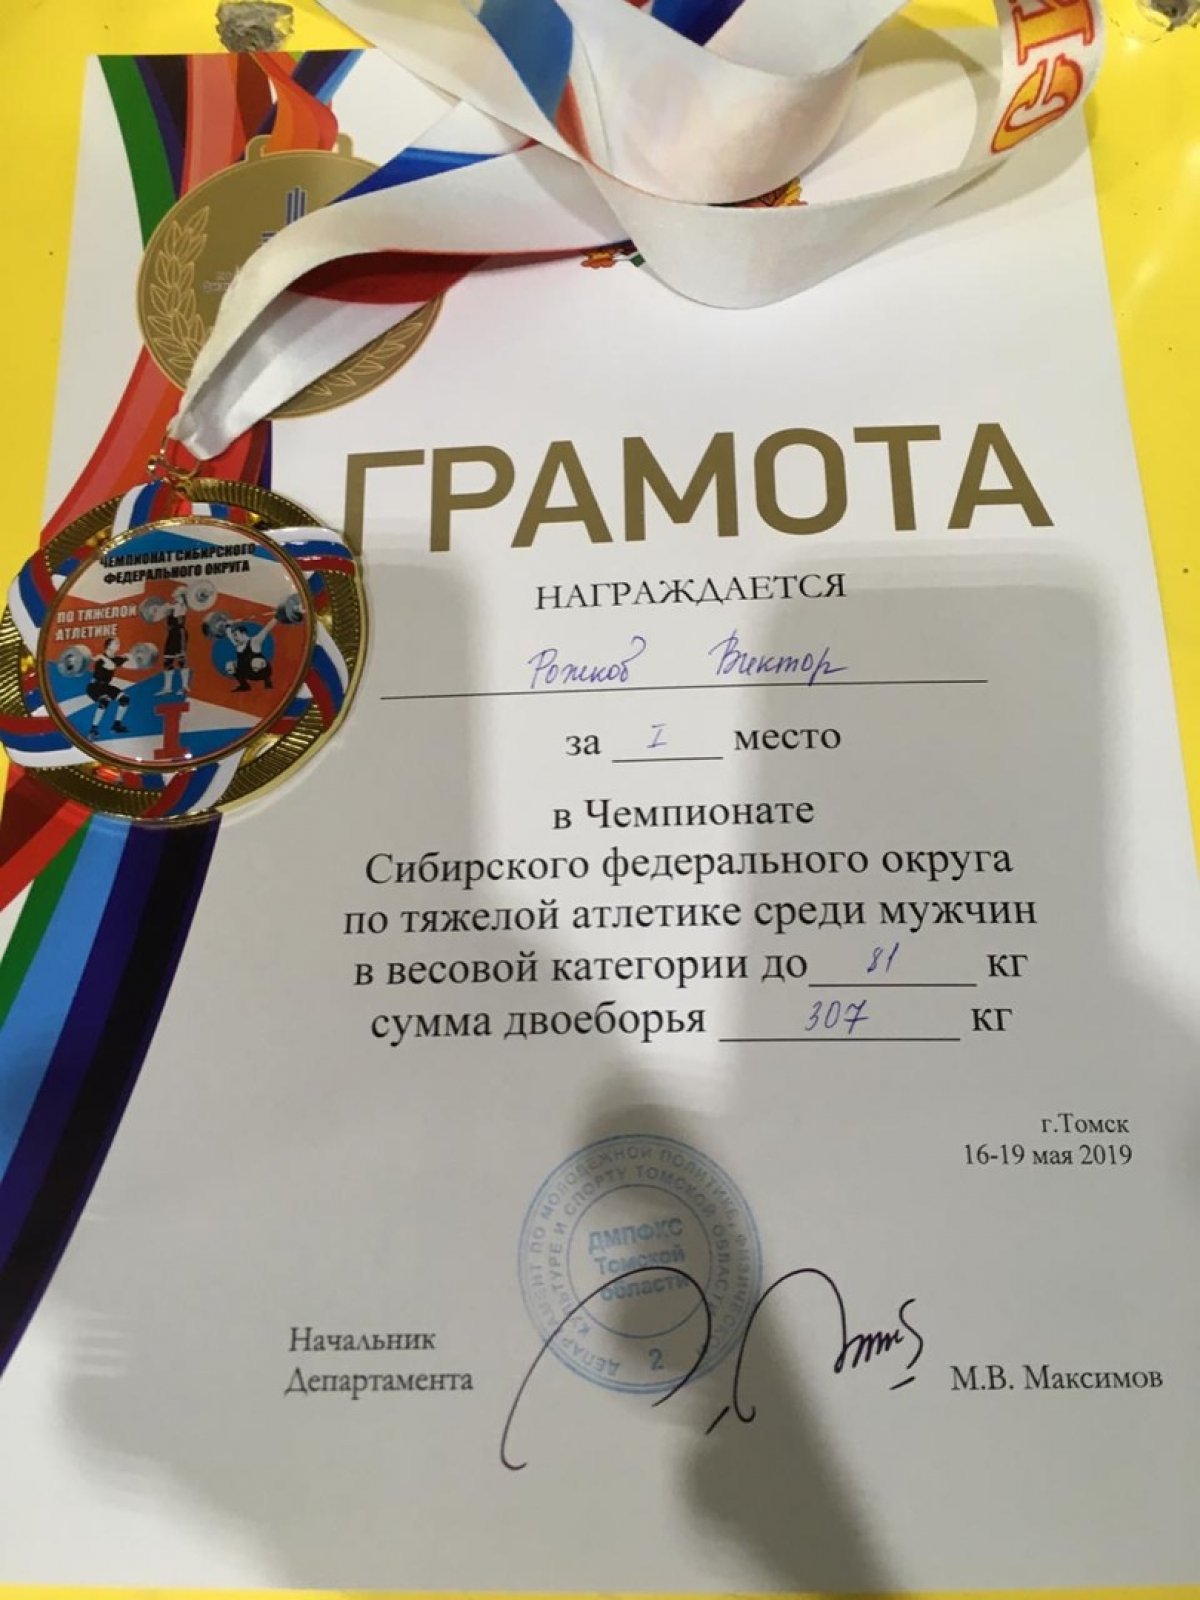 Поздравляем магистранта 1 курса РОЖКОВА ВИКТОРА с победой в ЧЕМПИОНАТЕ СИБИРСКОГО ФЕДЕРАЛЬНОГО ОКРУГА по тяжелой атлетике, проходившем в Томске с 16 по 19 мая 2019 года🏋‍♂